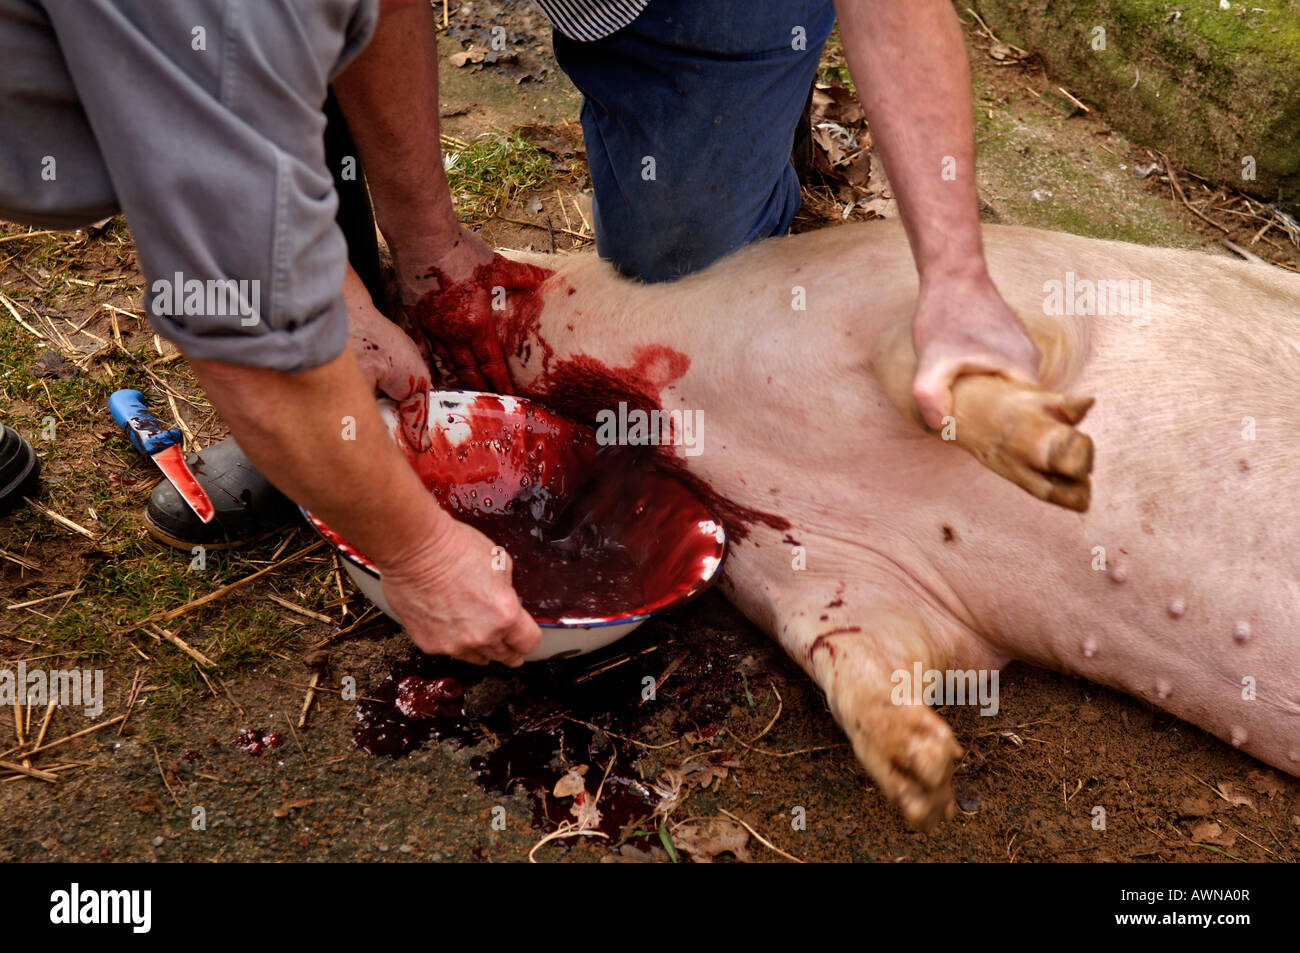 Home seccionado, drenar la sangre de un cerdo, Eckental anesthetised, Middle Franconia, Baviera, Alemania, Europa Foto de stock